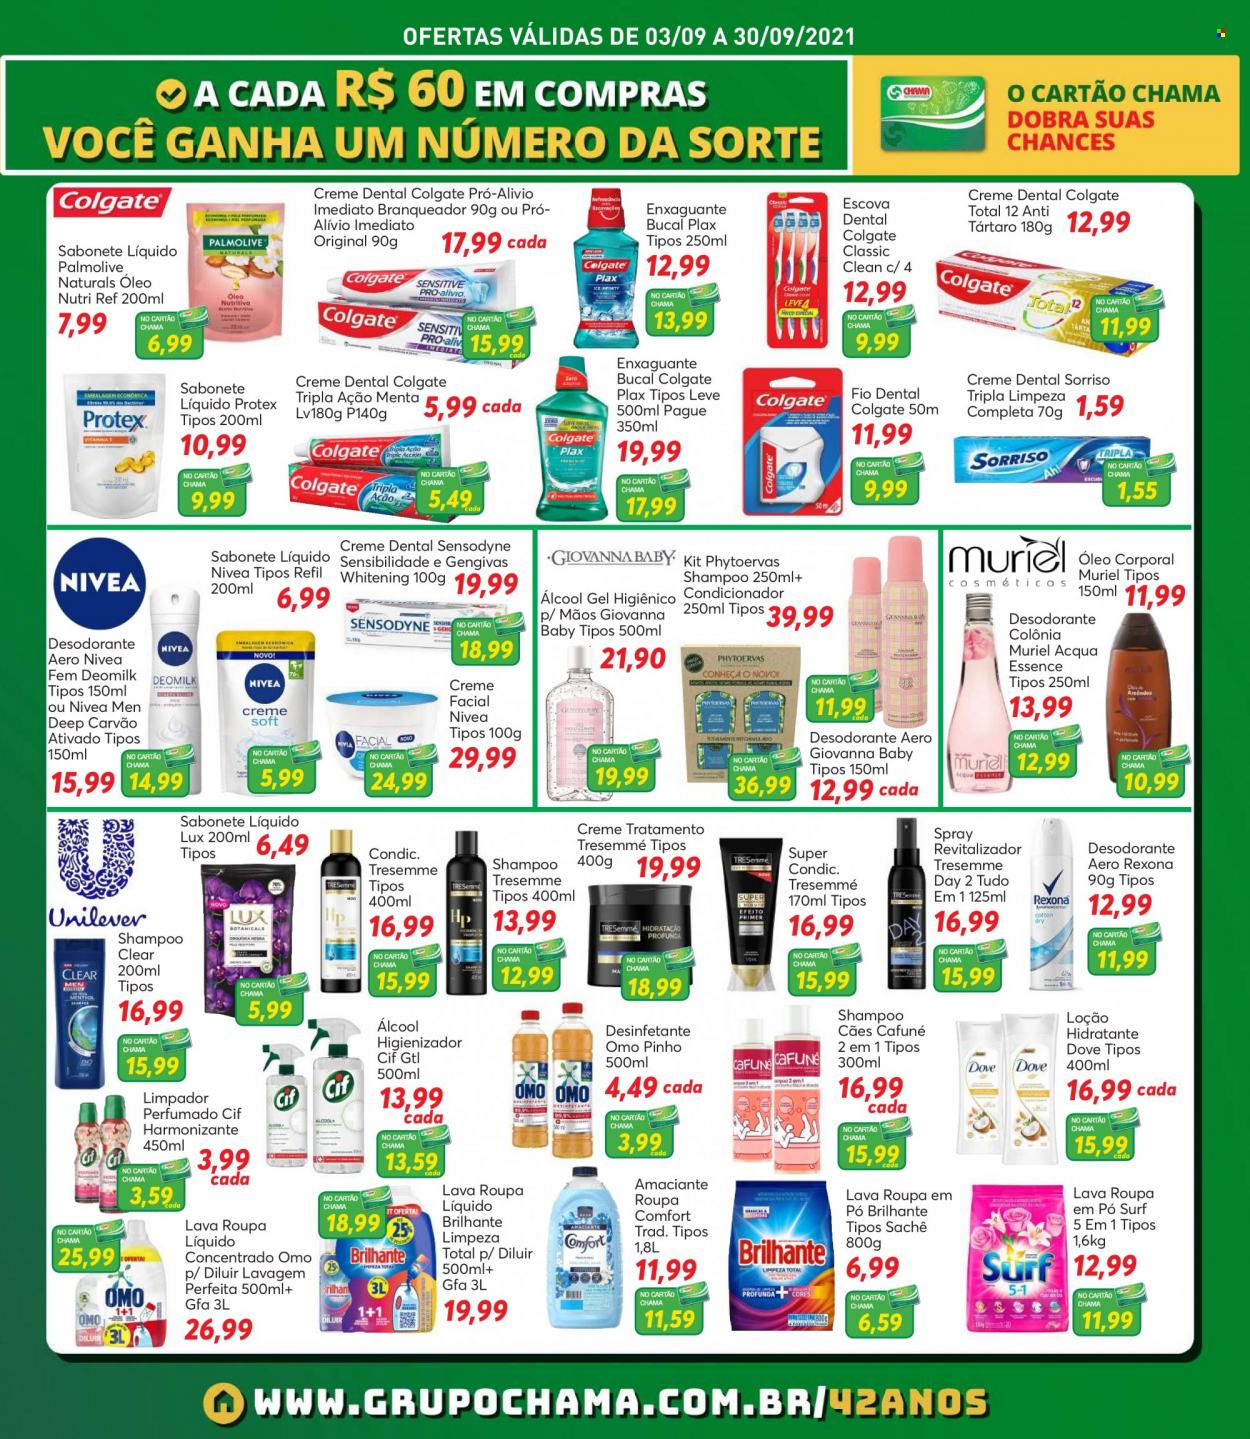 Encarte Chama Supermercados  - 03.09.2021 - 30.09.2021.